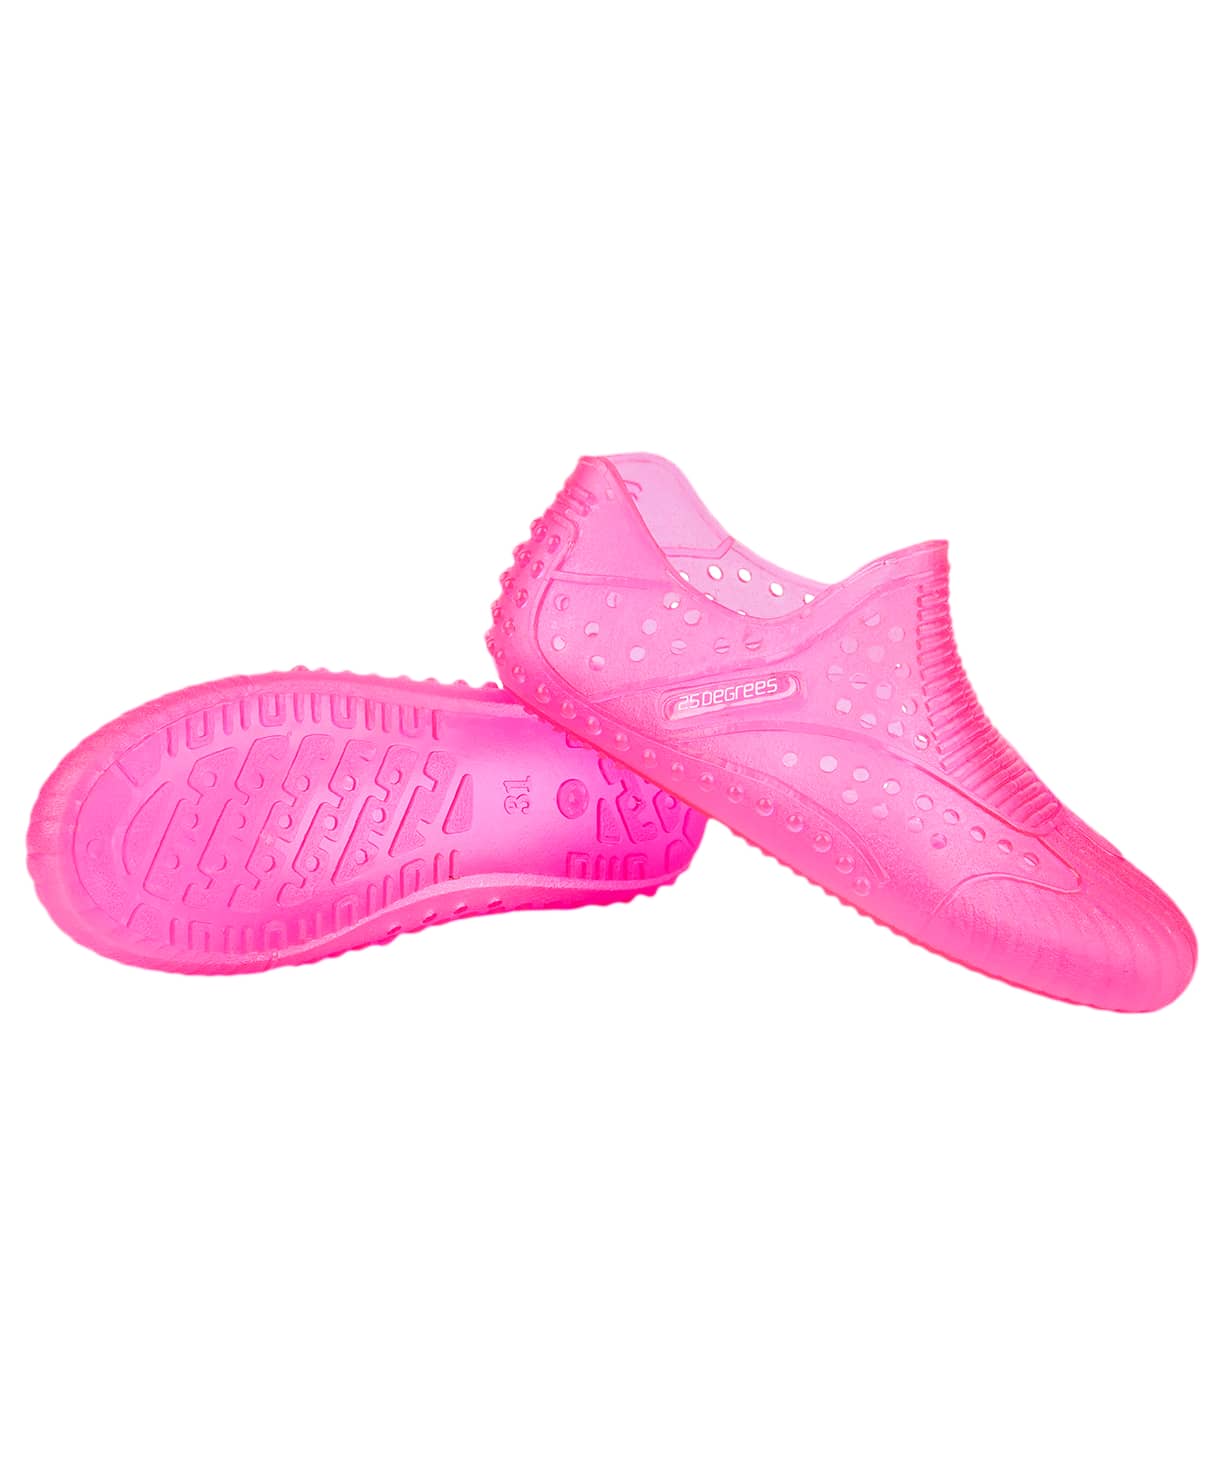 Аквашузы 25DEGREES Funnel Pink, для девочек, детский 1230_1479